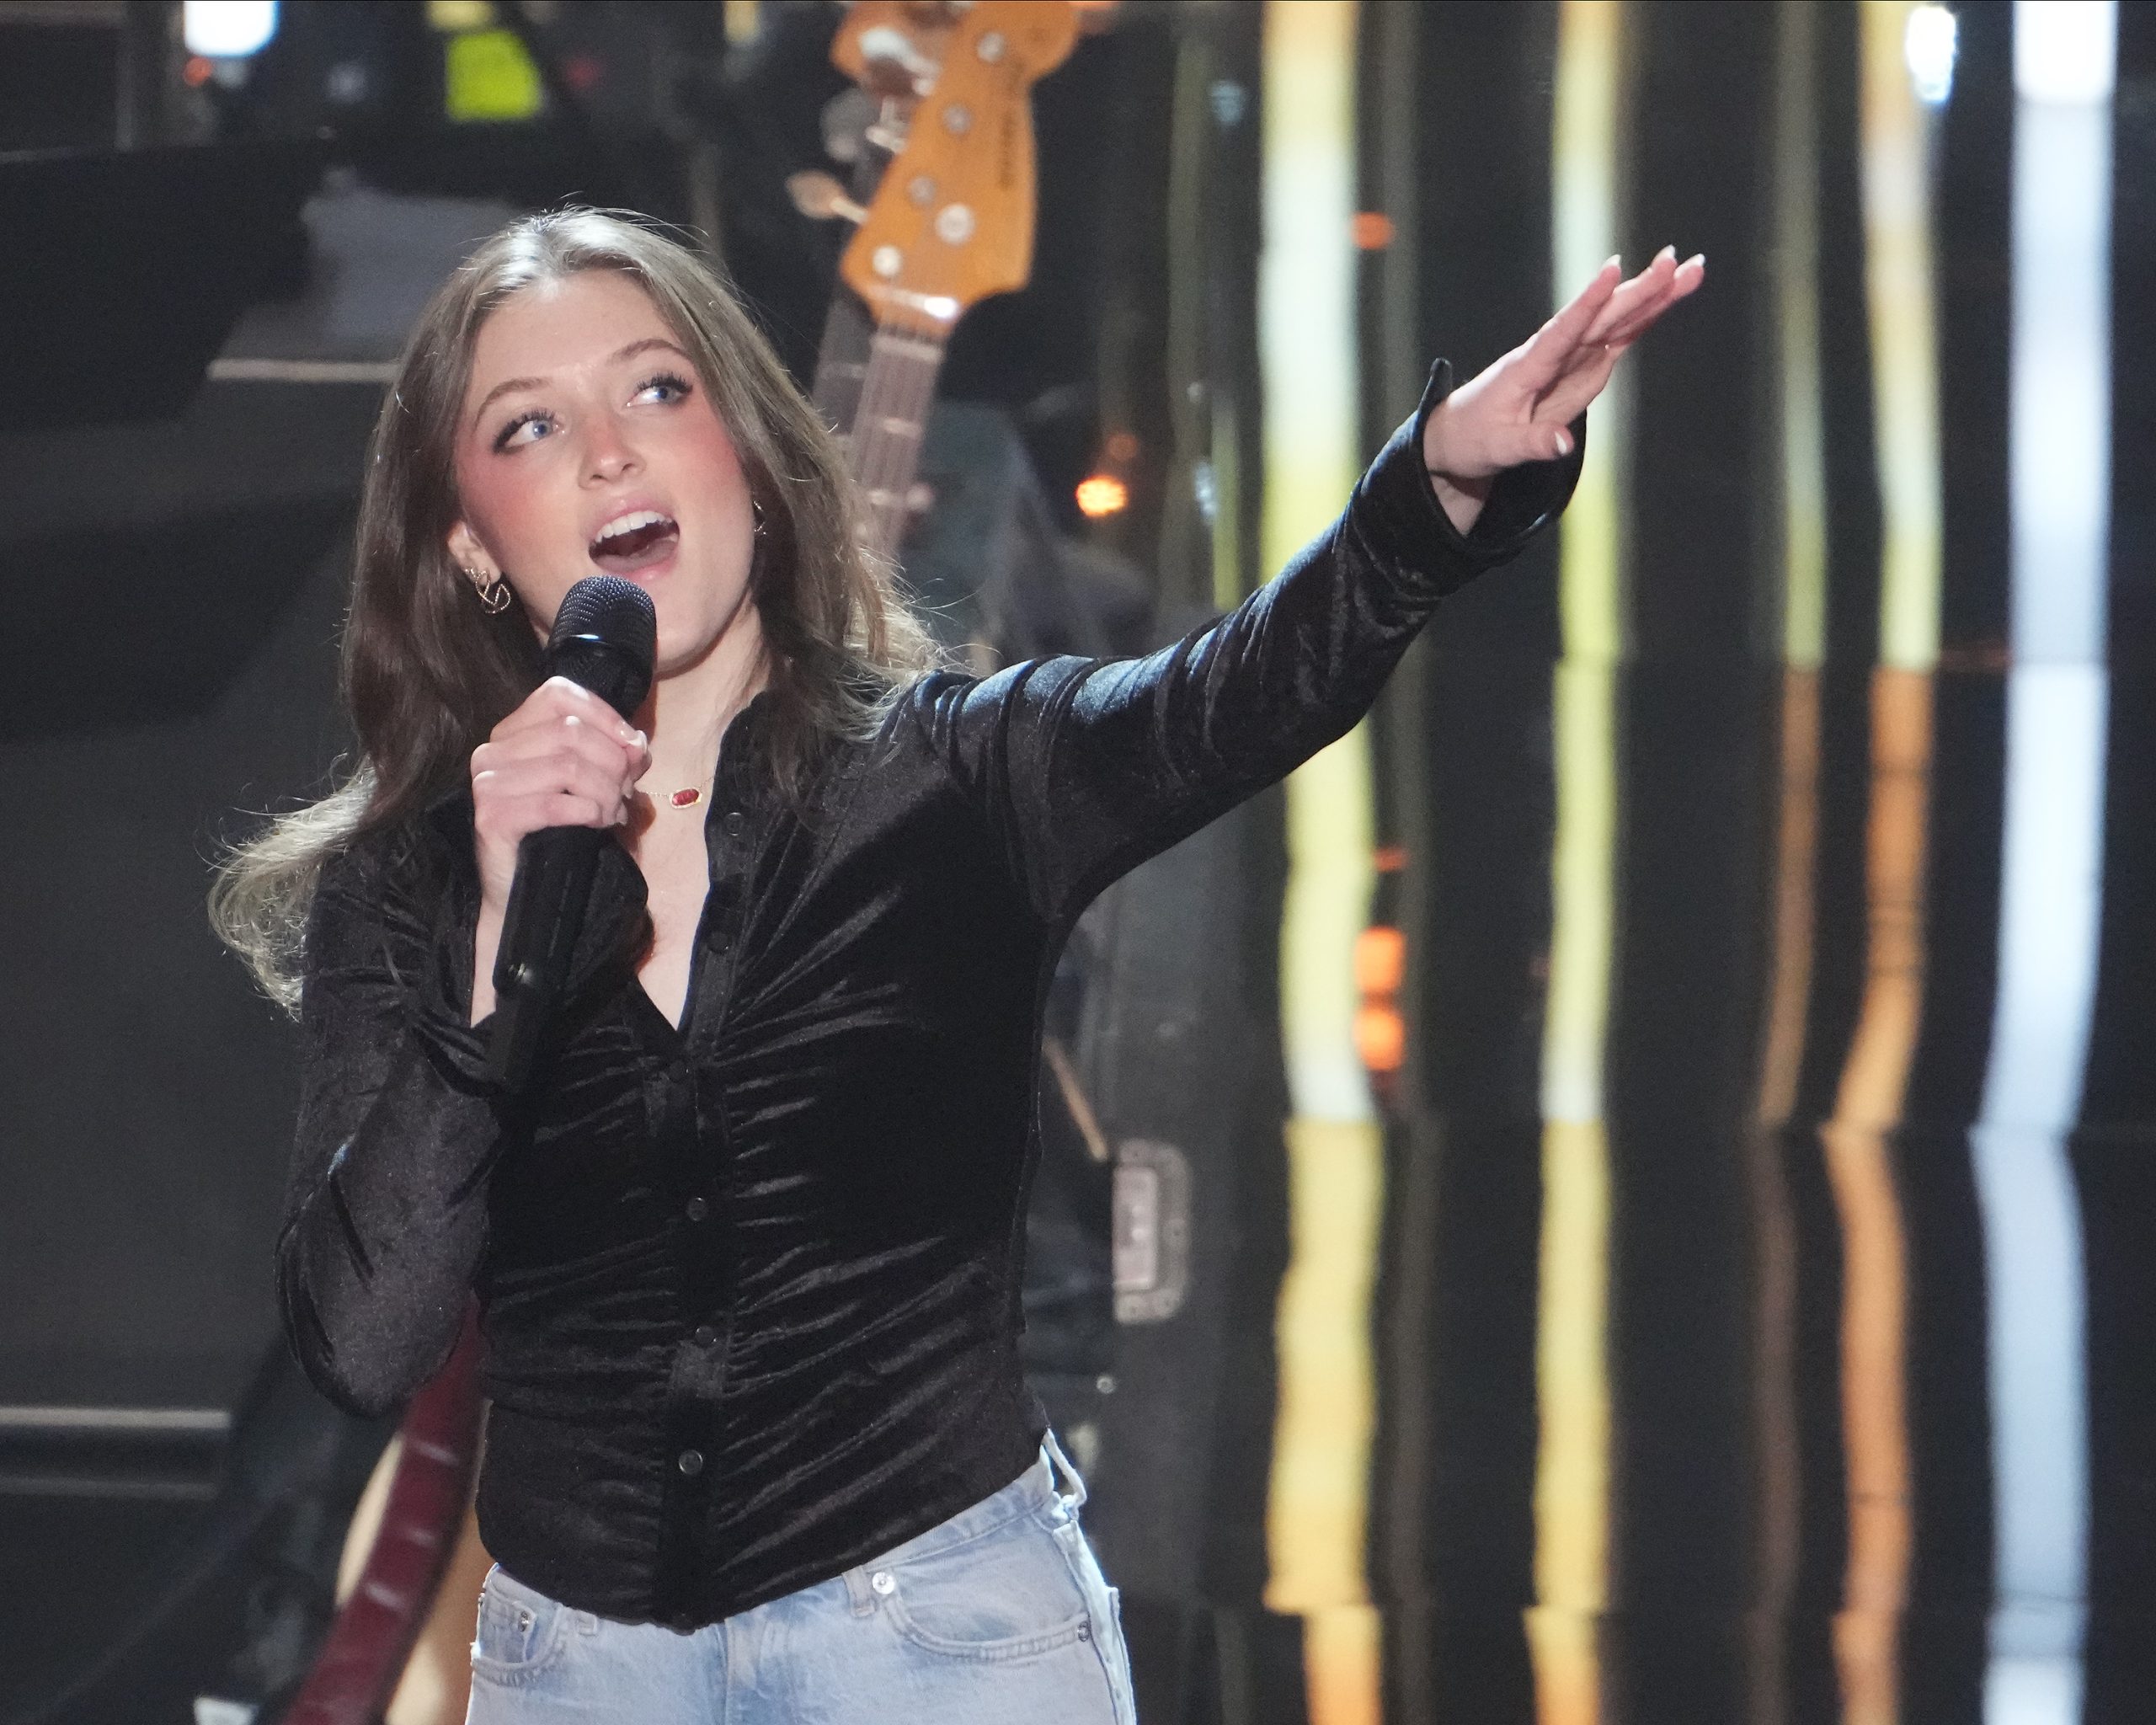 ELISE KRISTINE on American Idol